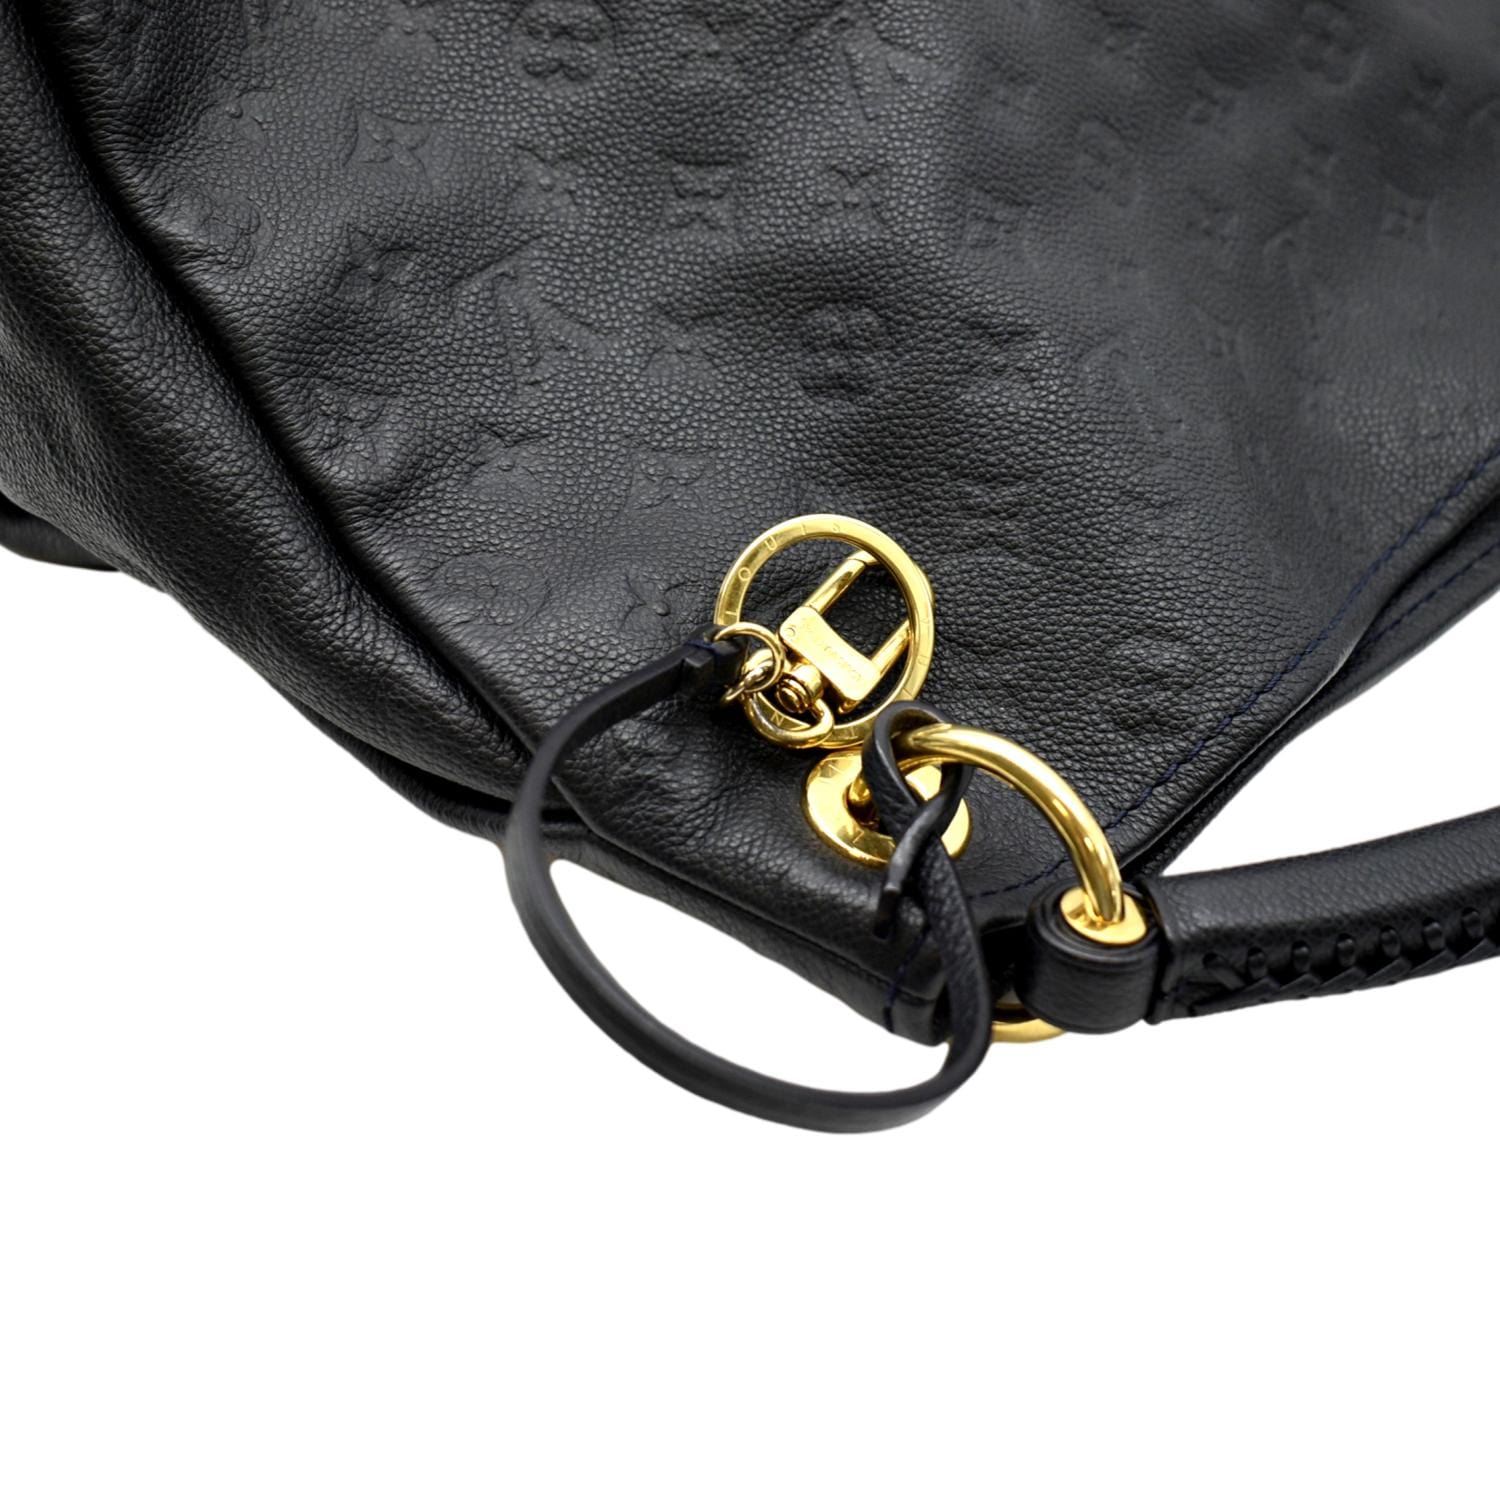 Louis Vuitton Black Monogram Empreinte Leather Artsy MM Bag Louis Vuitton